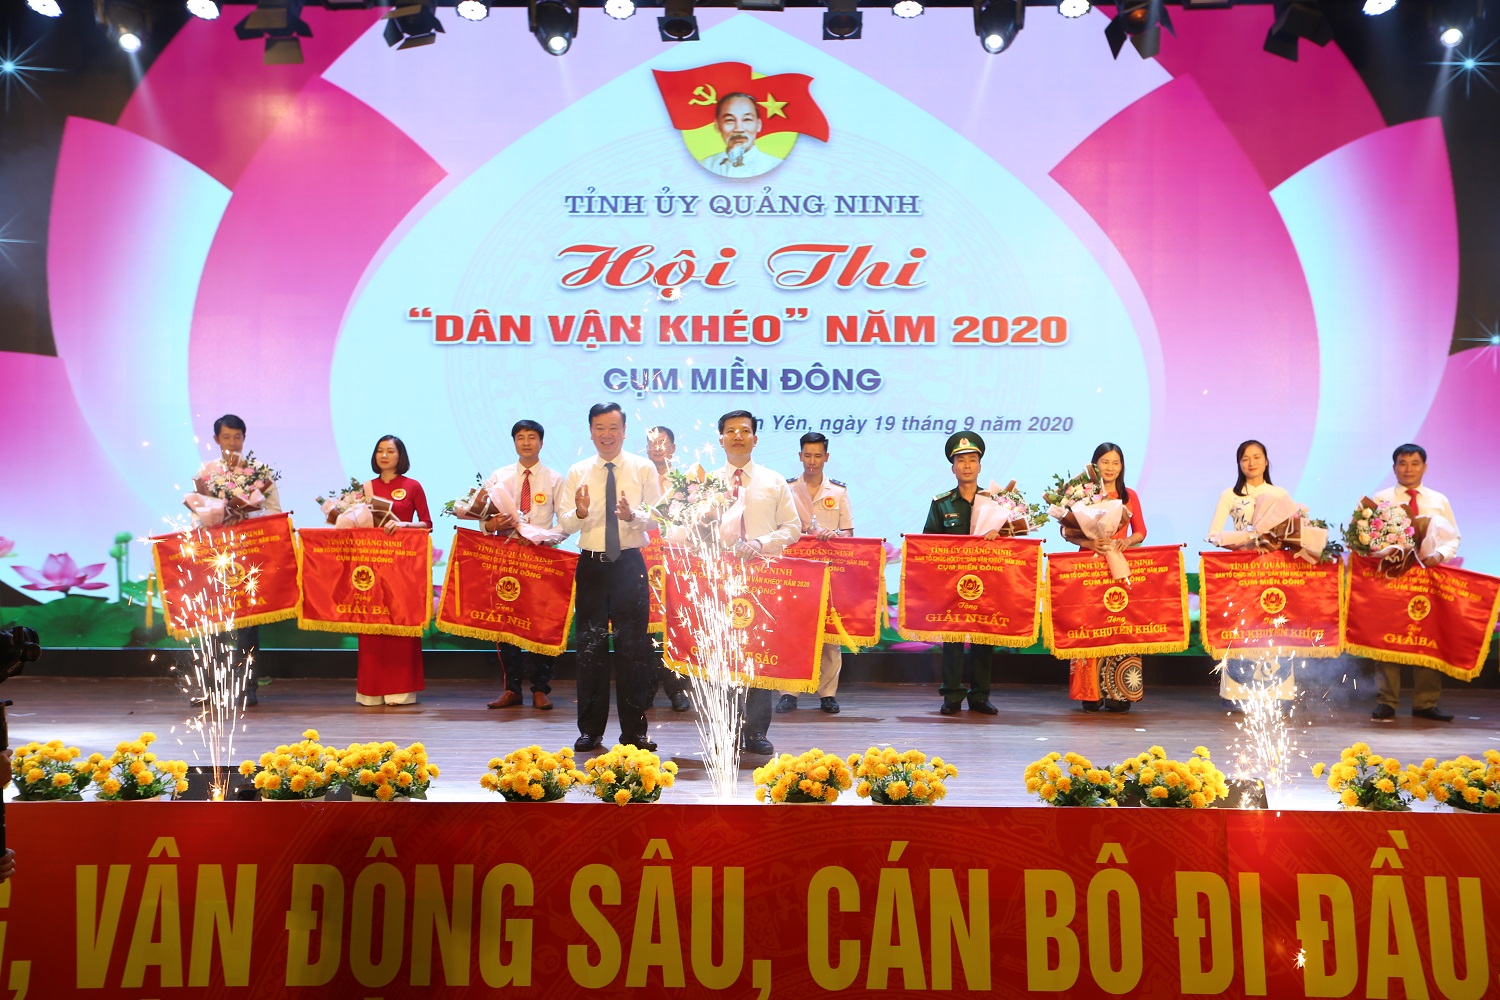 Hội thi Dân vận khéo tỉnh Quảng Ninh năm 2020 cụm miền Đông.